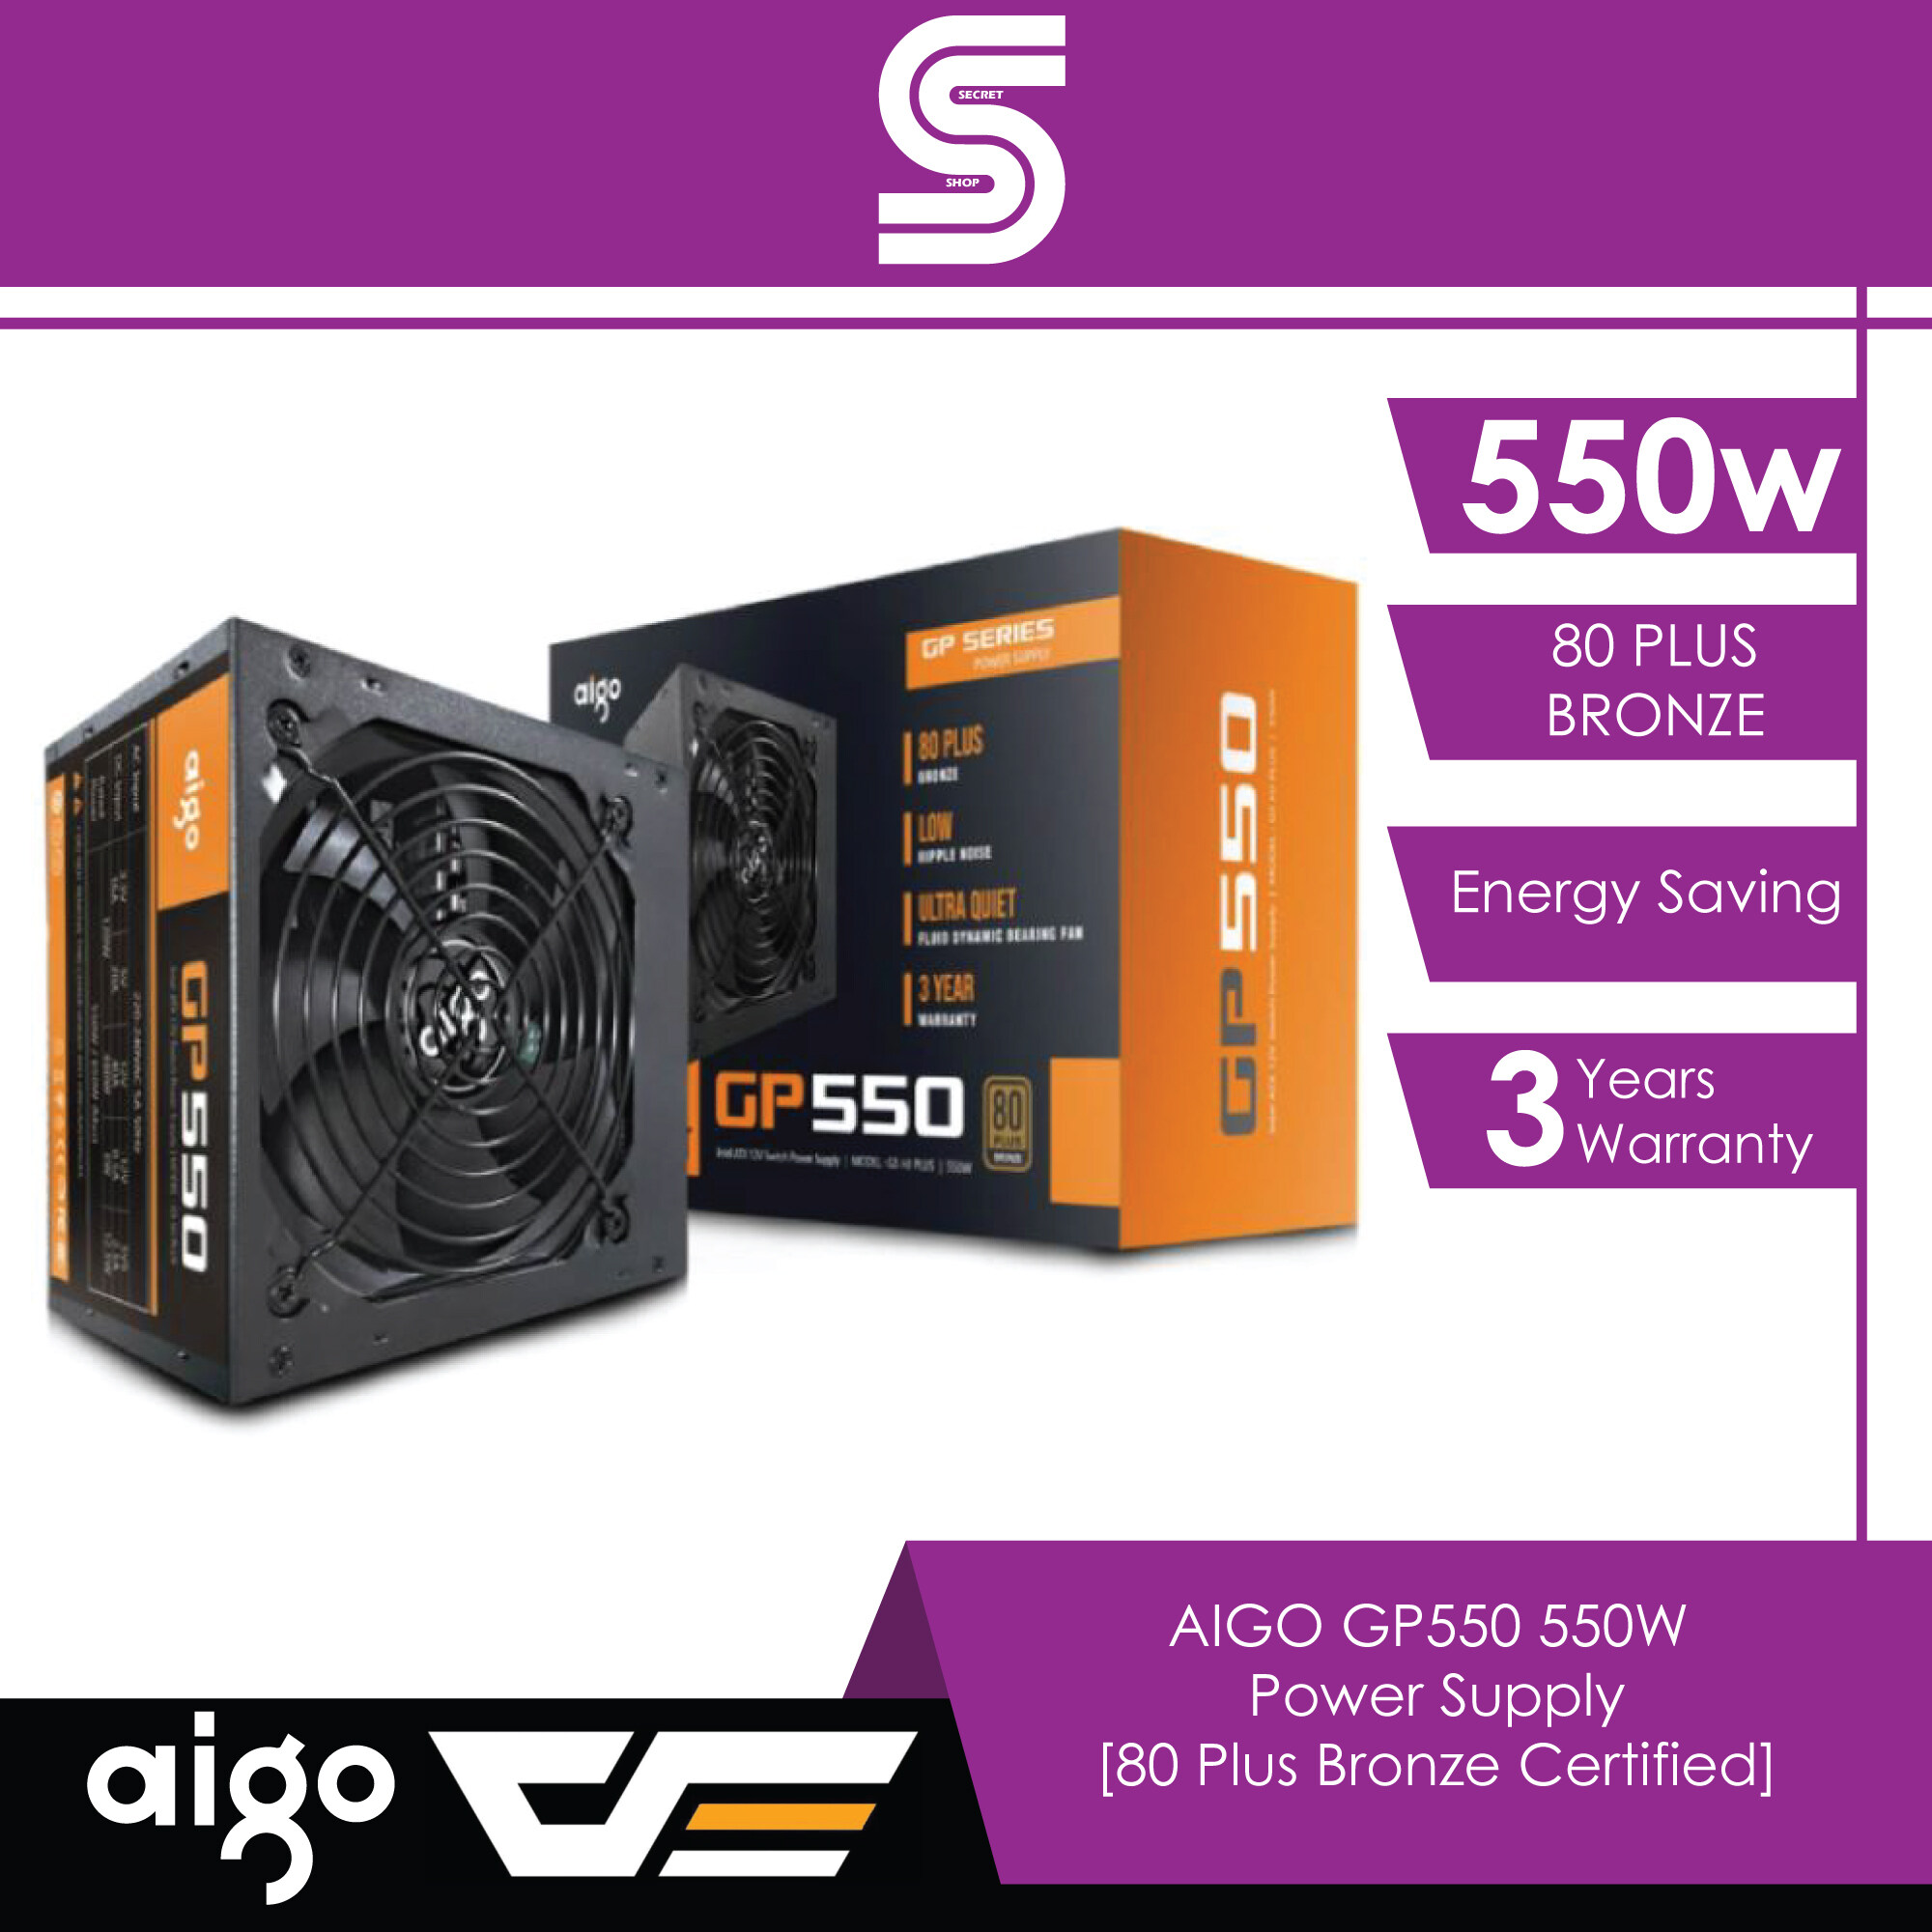 AIGO GP550 550W Power Supply Unit [80 Plus Bronze Certified] - AIGO-GP550